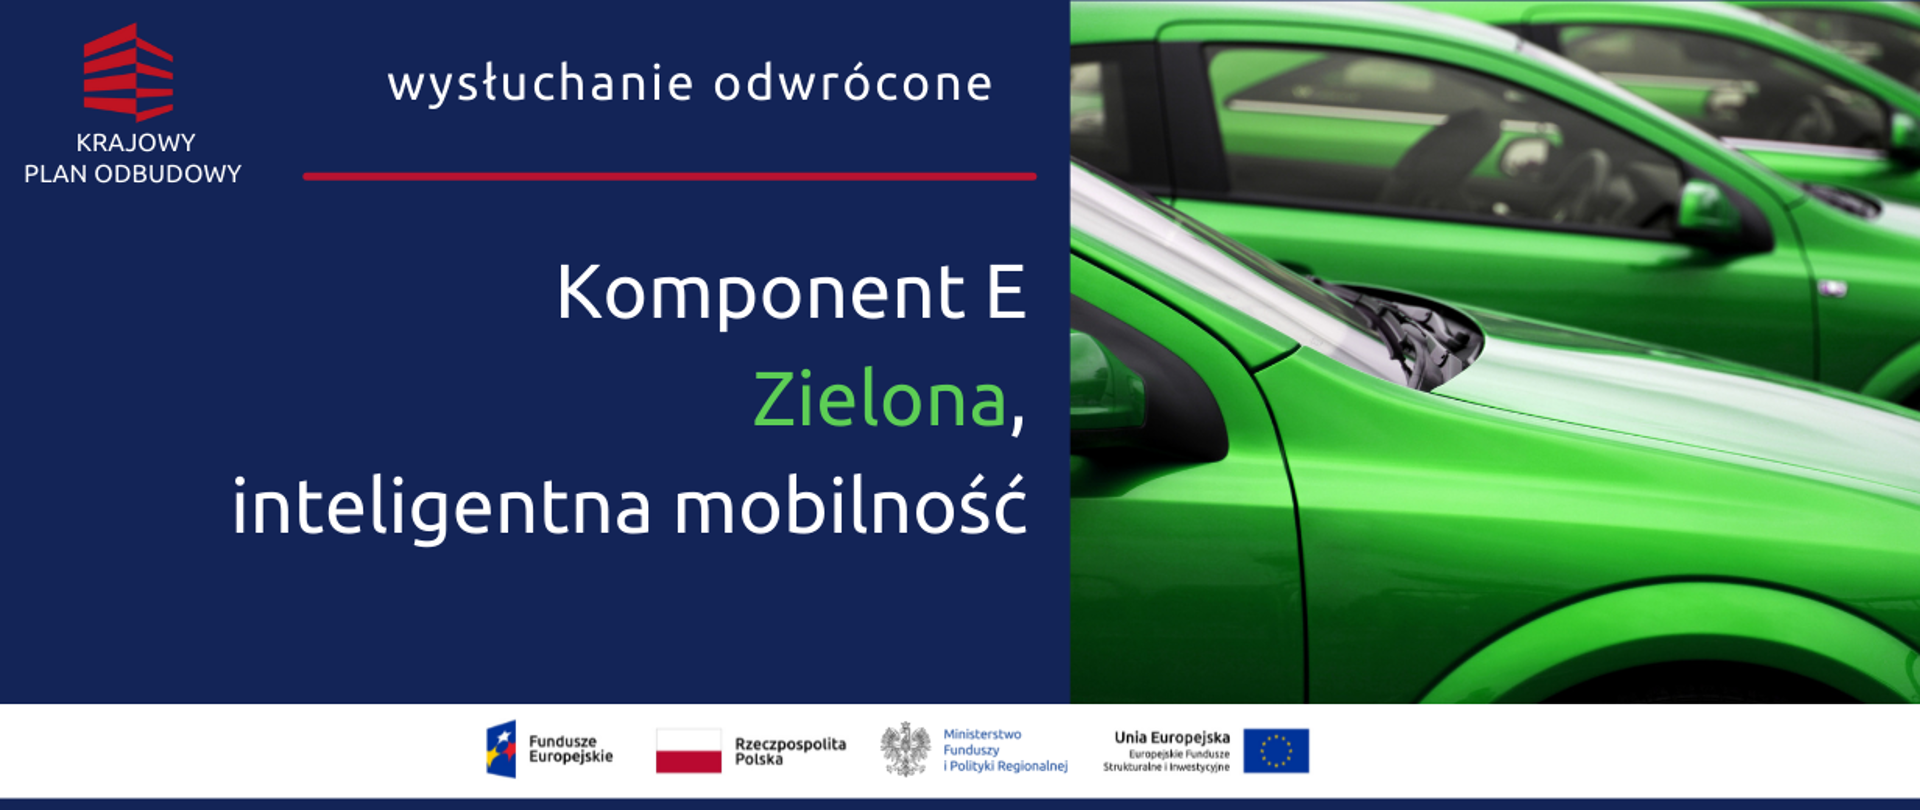 Na grafice napis: "Wysłuchanie odwrócone KPO Komponent E - Zielona, inteligentna mobilność oraz zdjęcie zielonych samochodów